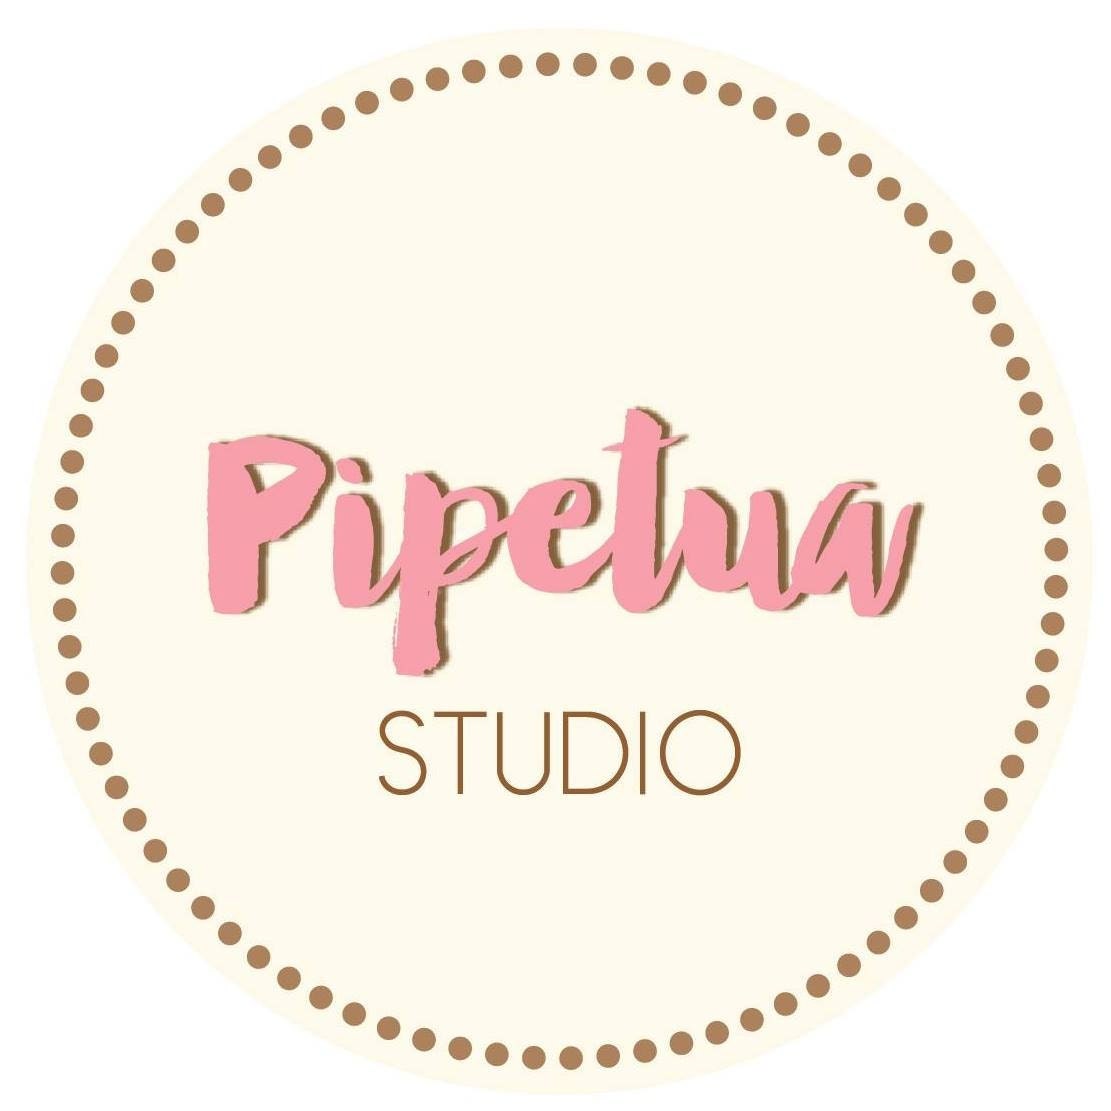 Pipetua - Graphic Design Studio l Printables • Custom Design